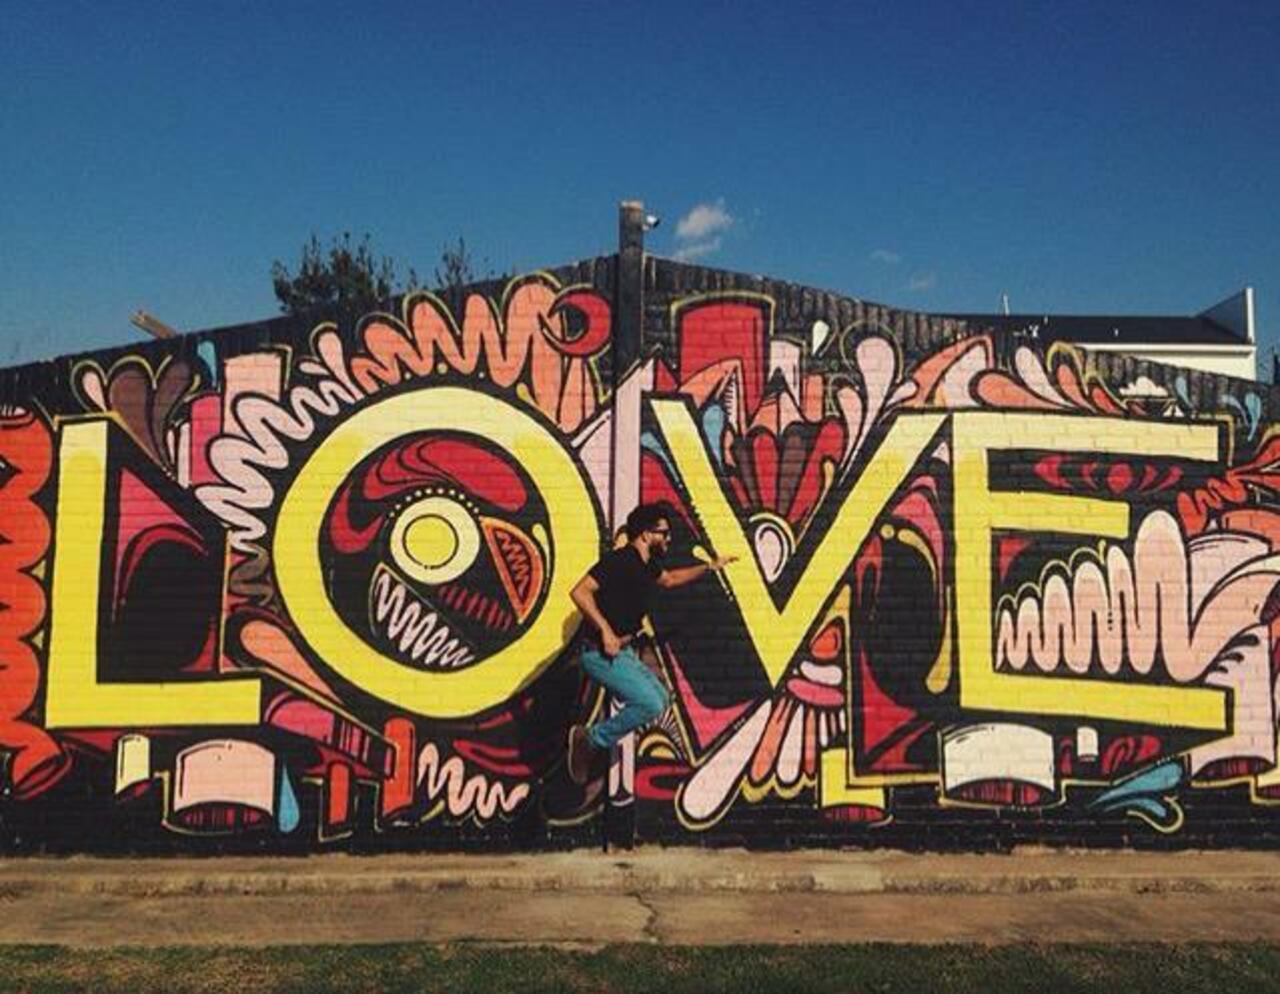 Love ❤️
Street Art by WileyArt

#art #graffiti #mural #streetart http://t.co/H10G9G9kc0